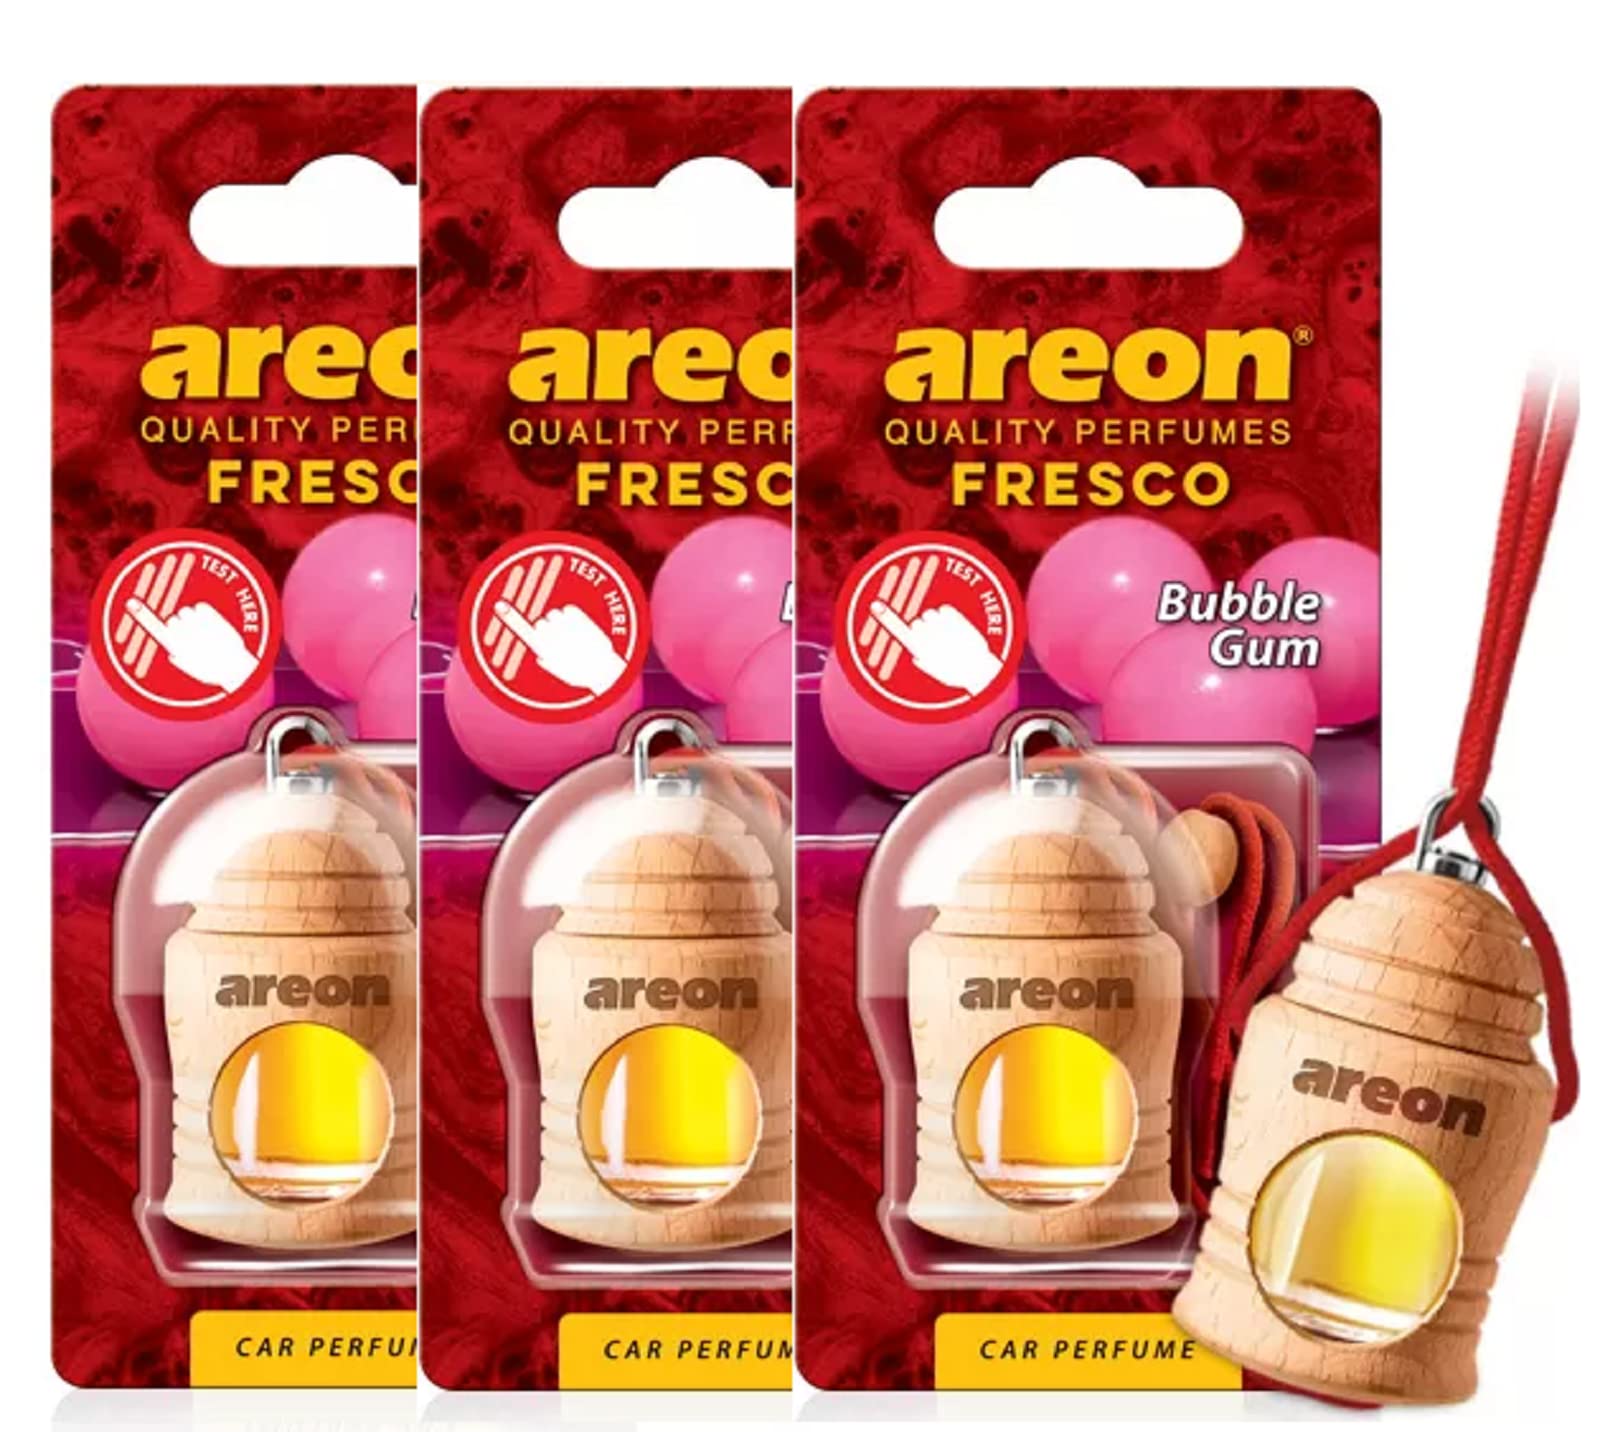 areon Fresco Auto Bubble Gum Aroma Parf?m Baum Lufterfrischer Home Office (Pack von 3) von Areon Car Parfume